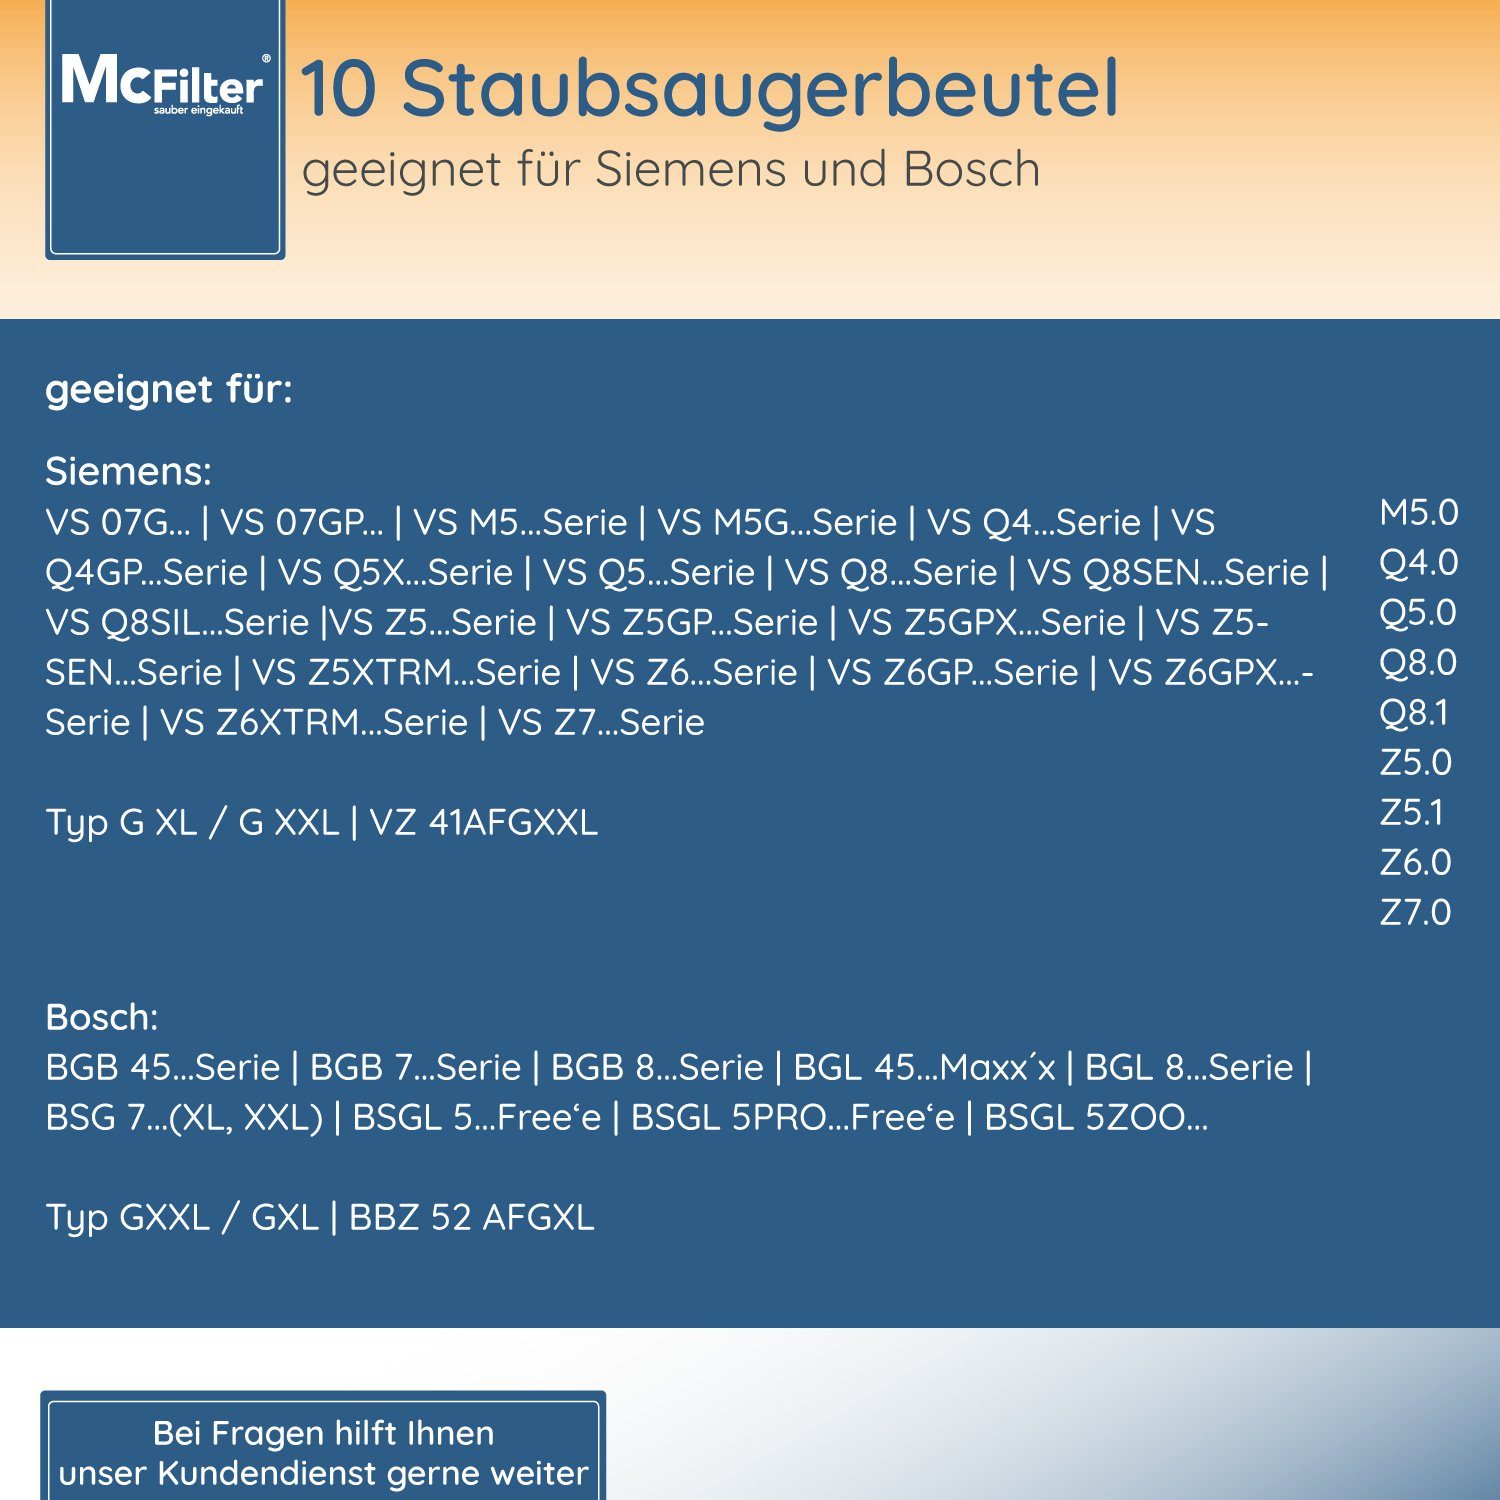 McFilter Staubsaugerbeutel geeignet für Siemens 4.0), St., inkl. Beutel mit power Stück), green Filter 5-lagiger passend (10 Staubsauger Hygieneverschluss, 10 Q VSQ4GP1266 (Serie für